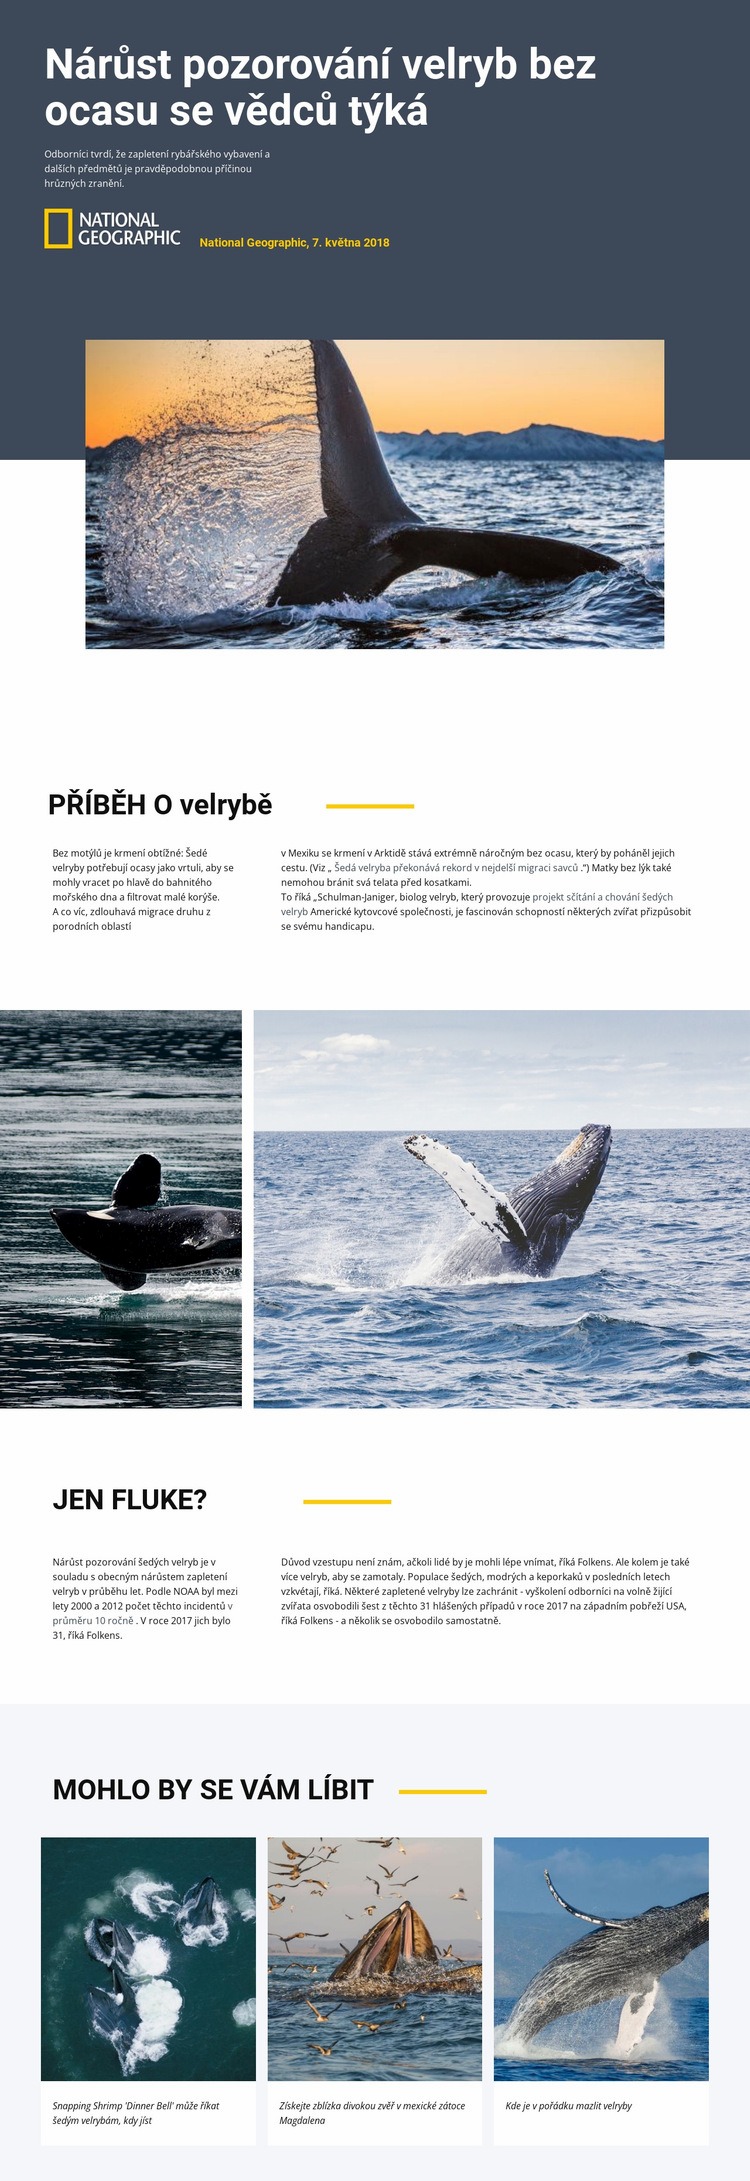 Středisko pro sledování velryb Šablona HTML